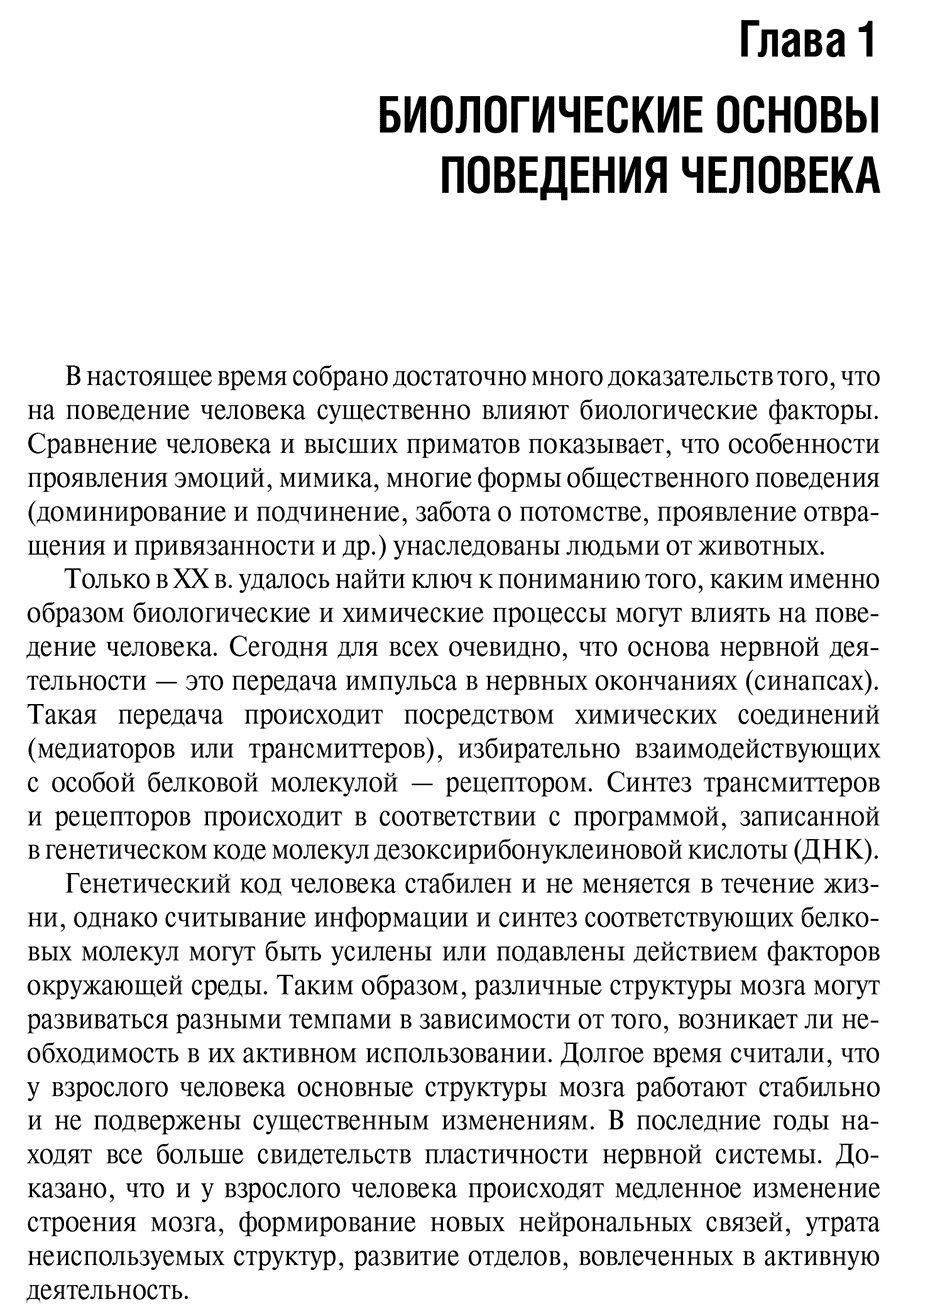 Пример станицы из книги "Психиатрия и медицинская психология: учебник" - Н. Н. Иванец